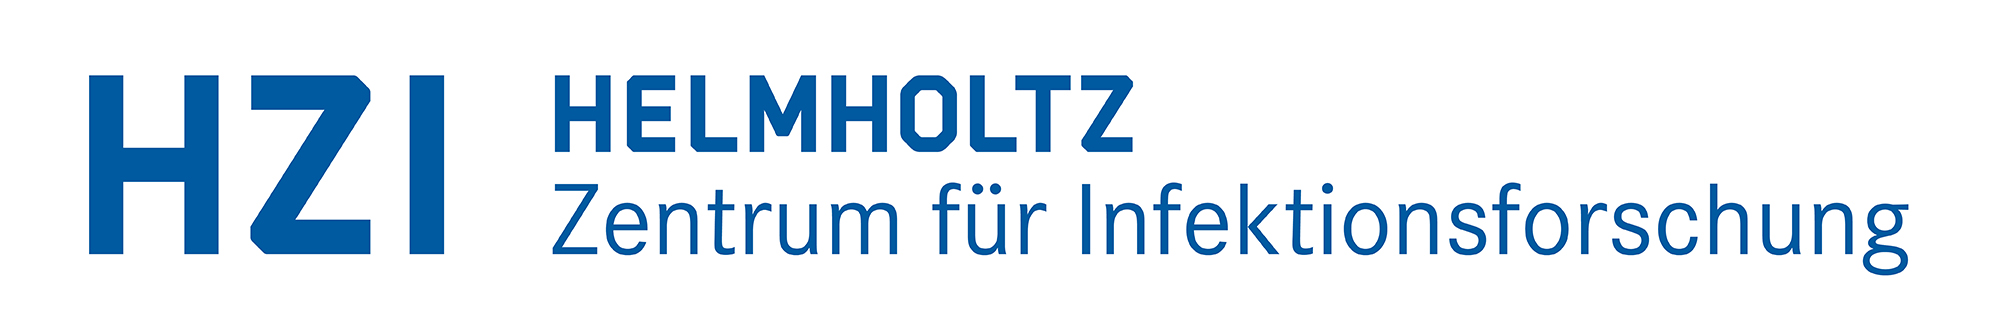 Logo: Helmholtz-Zentrum für Infektionsforschung